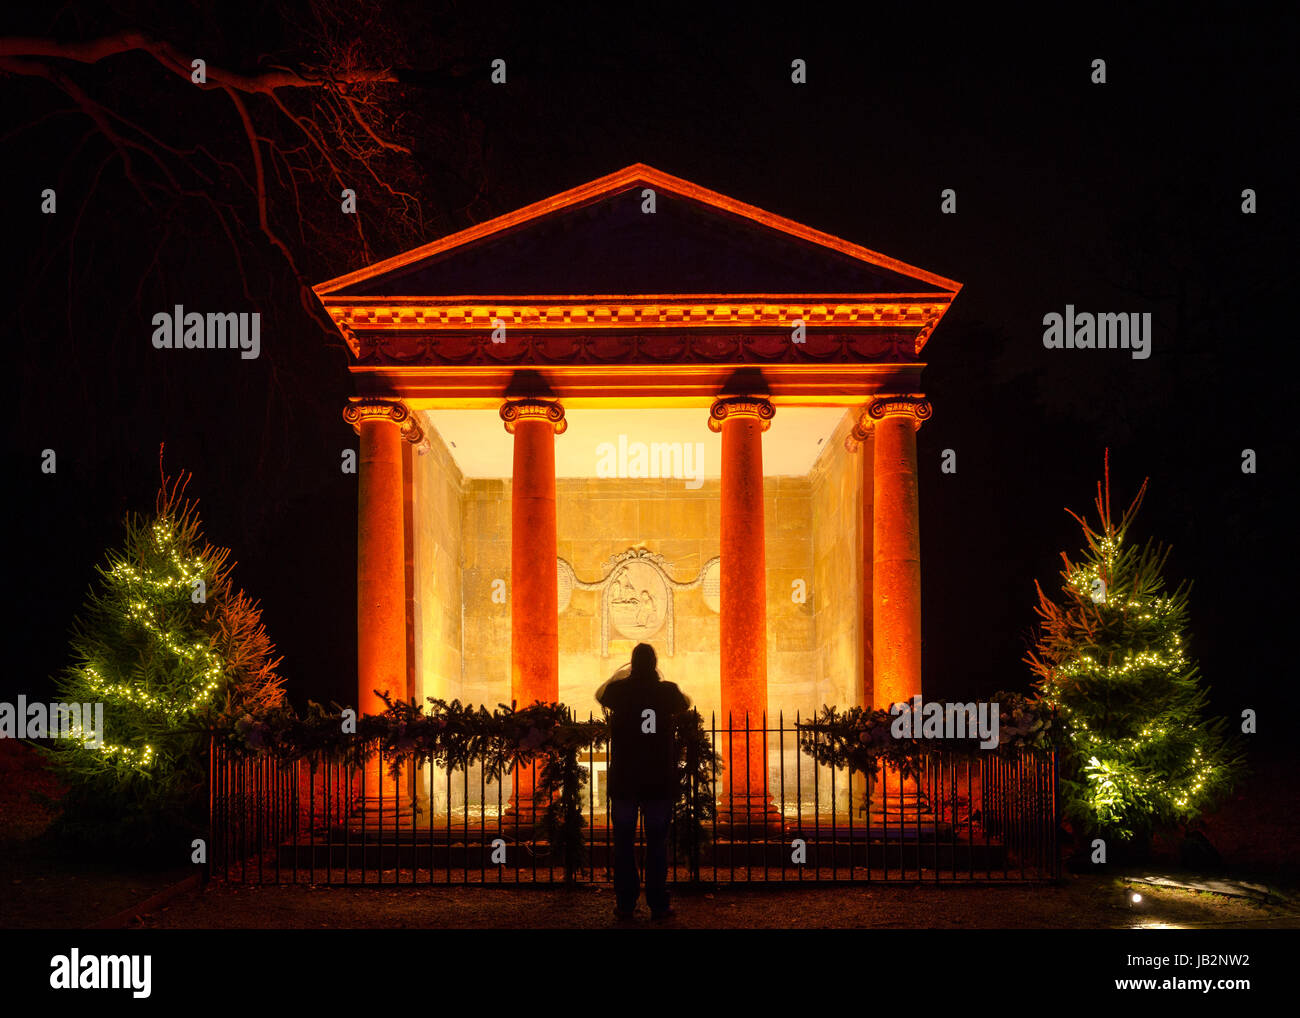 Die beleuchteten Tempel und gefederter Kugel an Weihnachtsbeleuchtung Blenheim Palace. Dezember 2016 Dezember 2016 Stockfoto